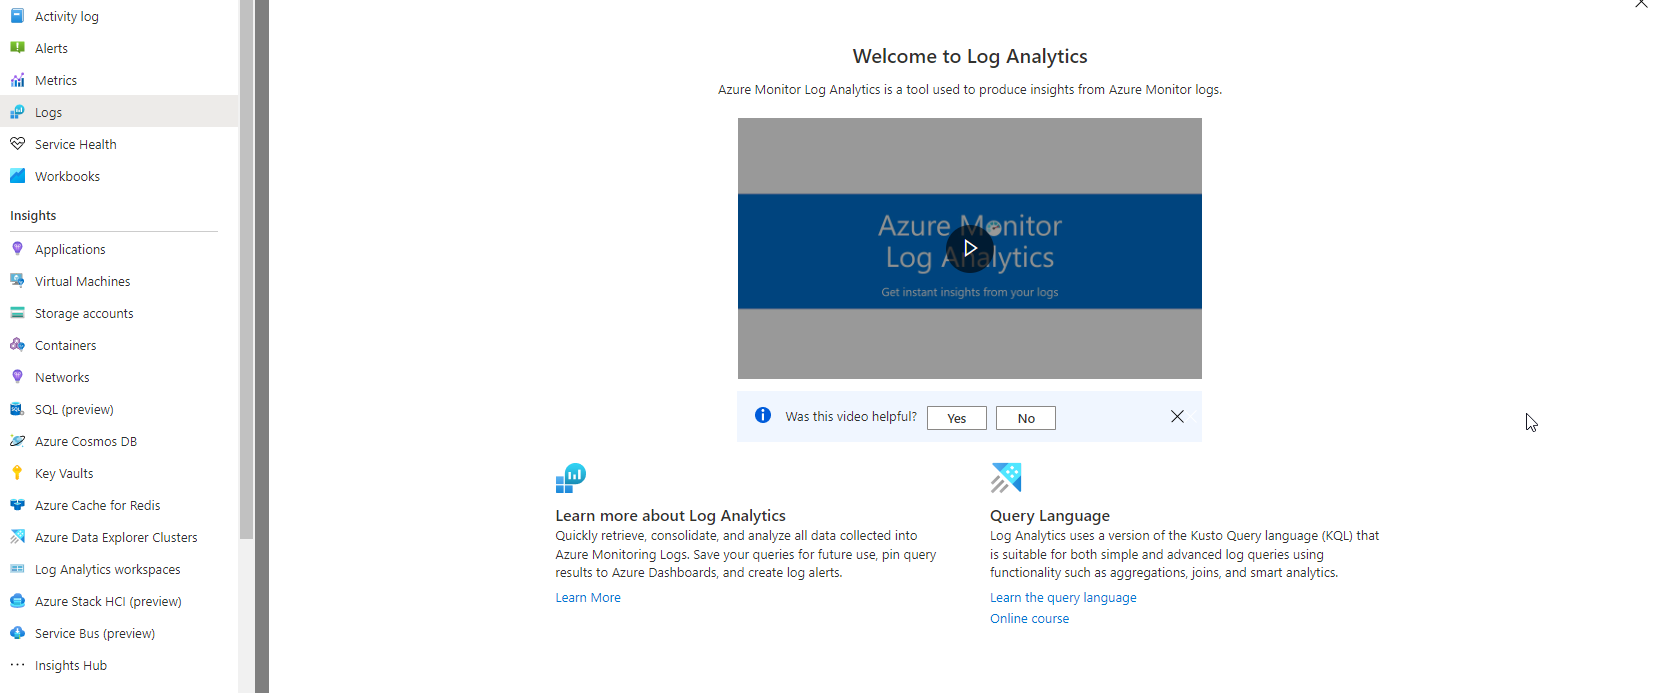 Azure Monitor Log Analytics Tool in Azure Portal